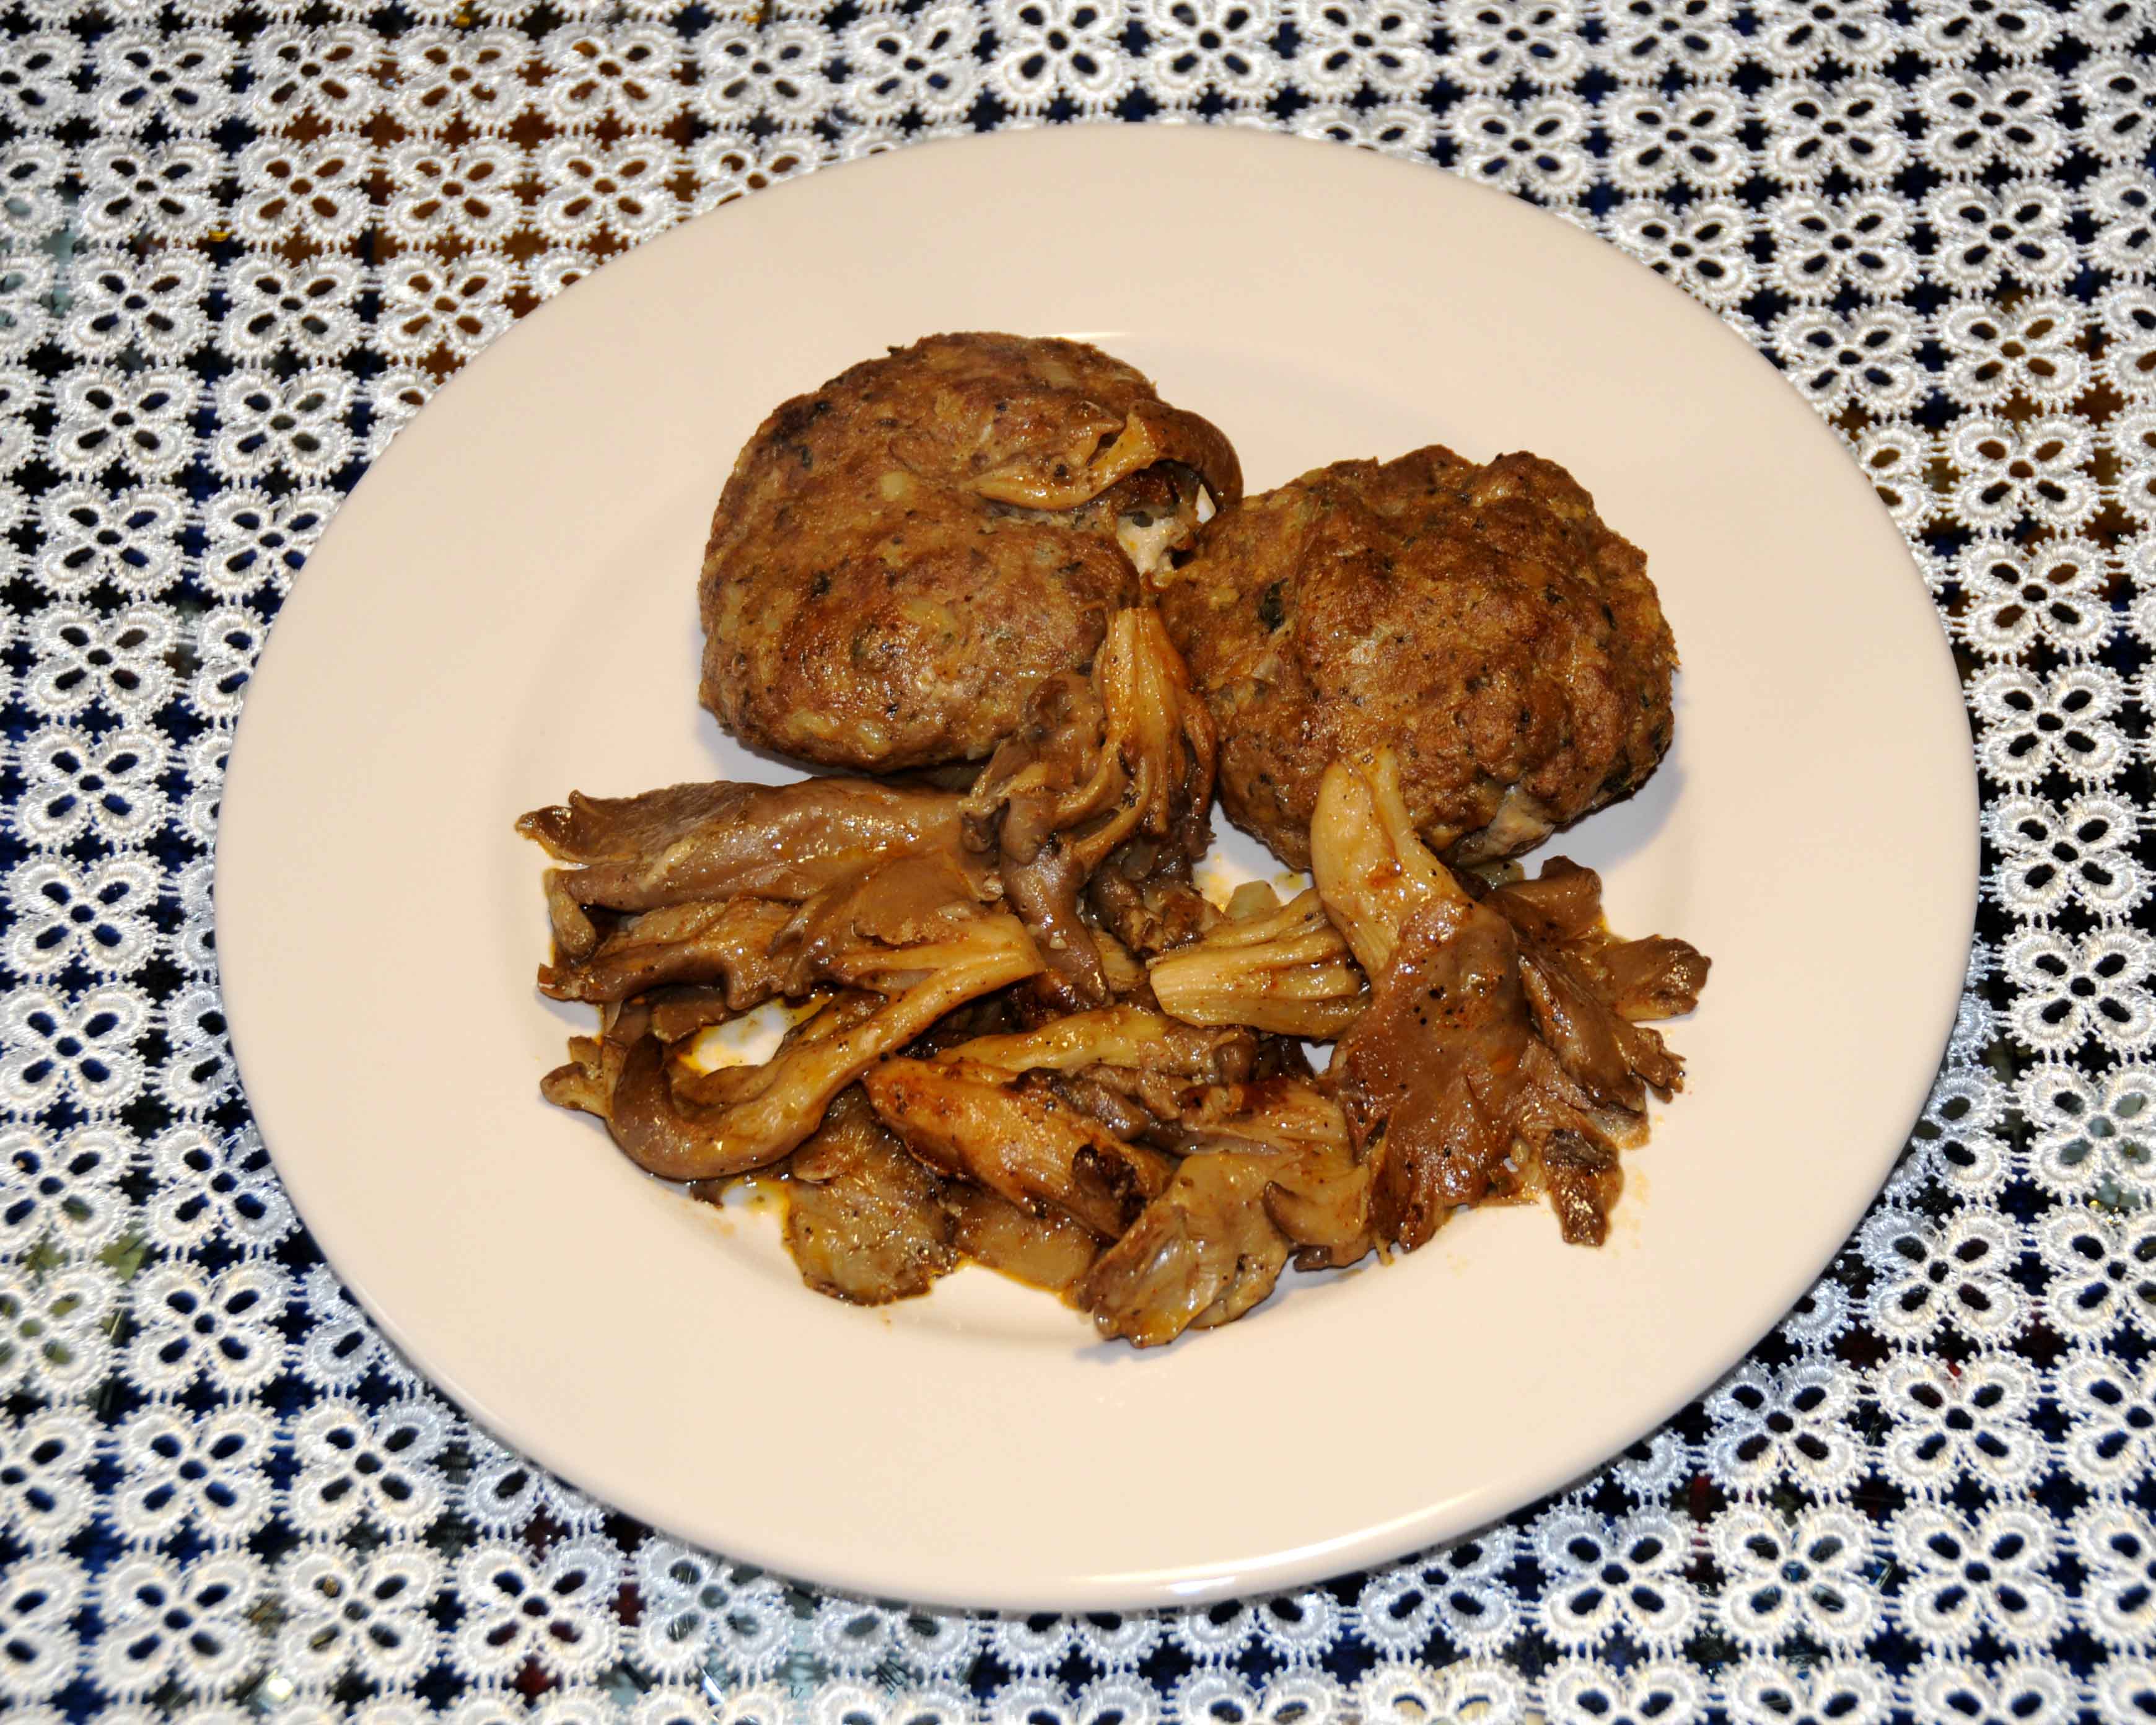 Μπιφτέκια με μανιτάρια - Burgers with mushrooms